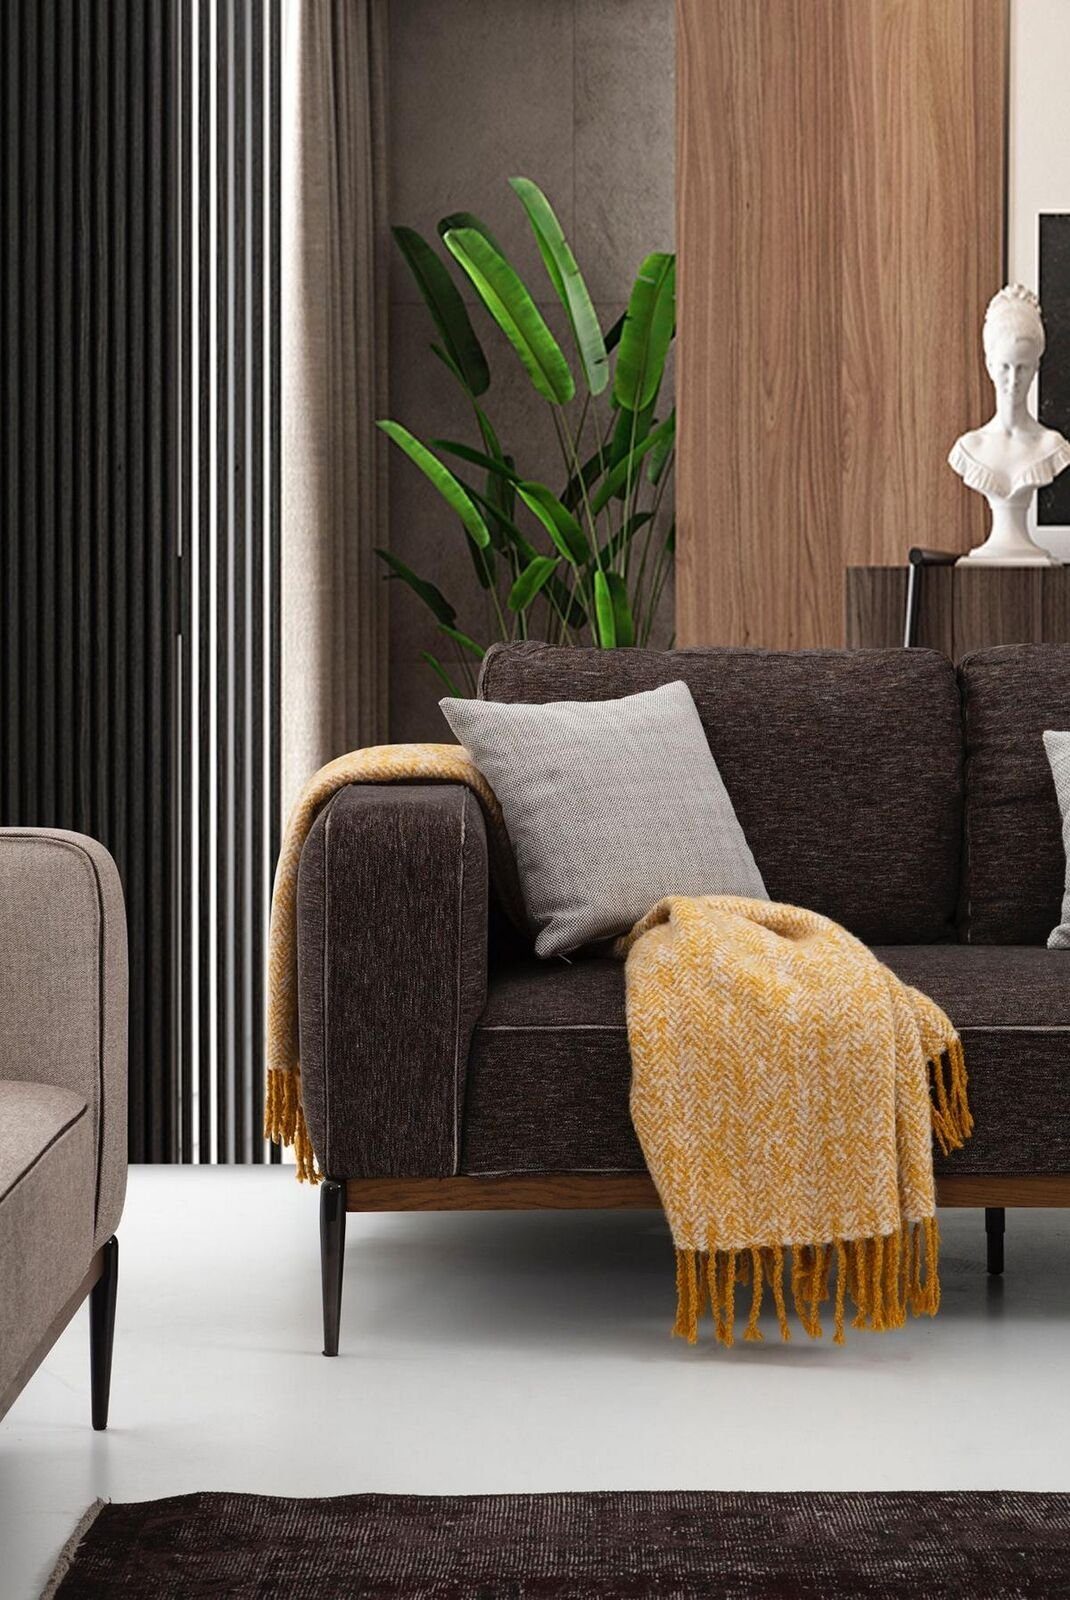 JVmoebel 3-Sitzer Dreisitzer Sofa in Design Stoff Wohnzimmer Grau, Teile, Made Modern 3 1 Sitzer Sofas Europa